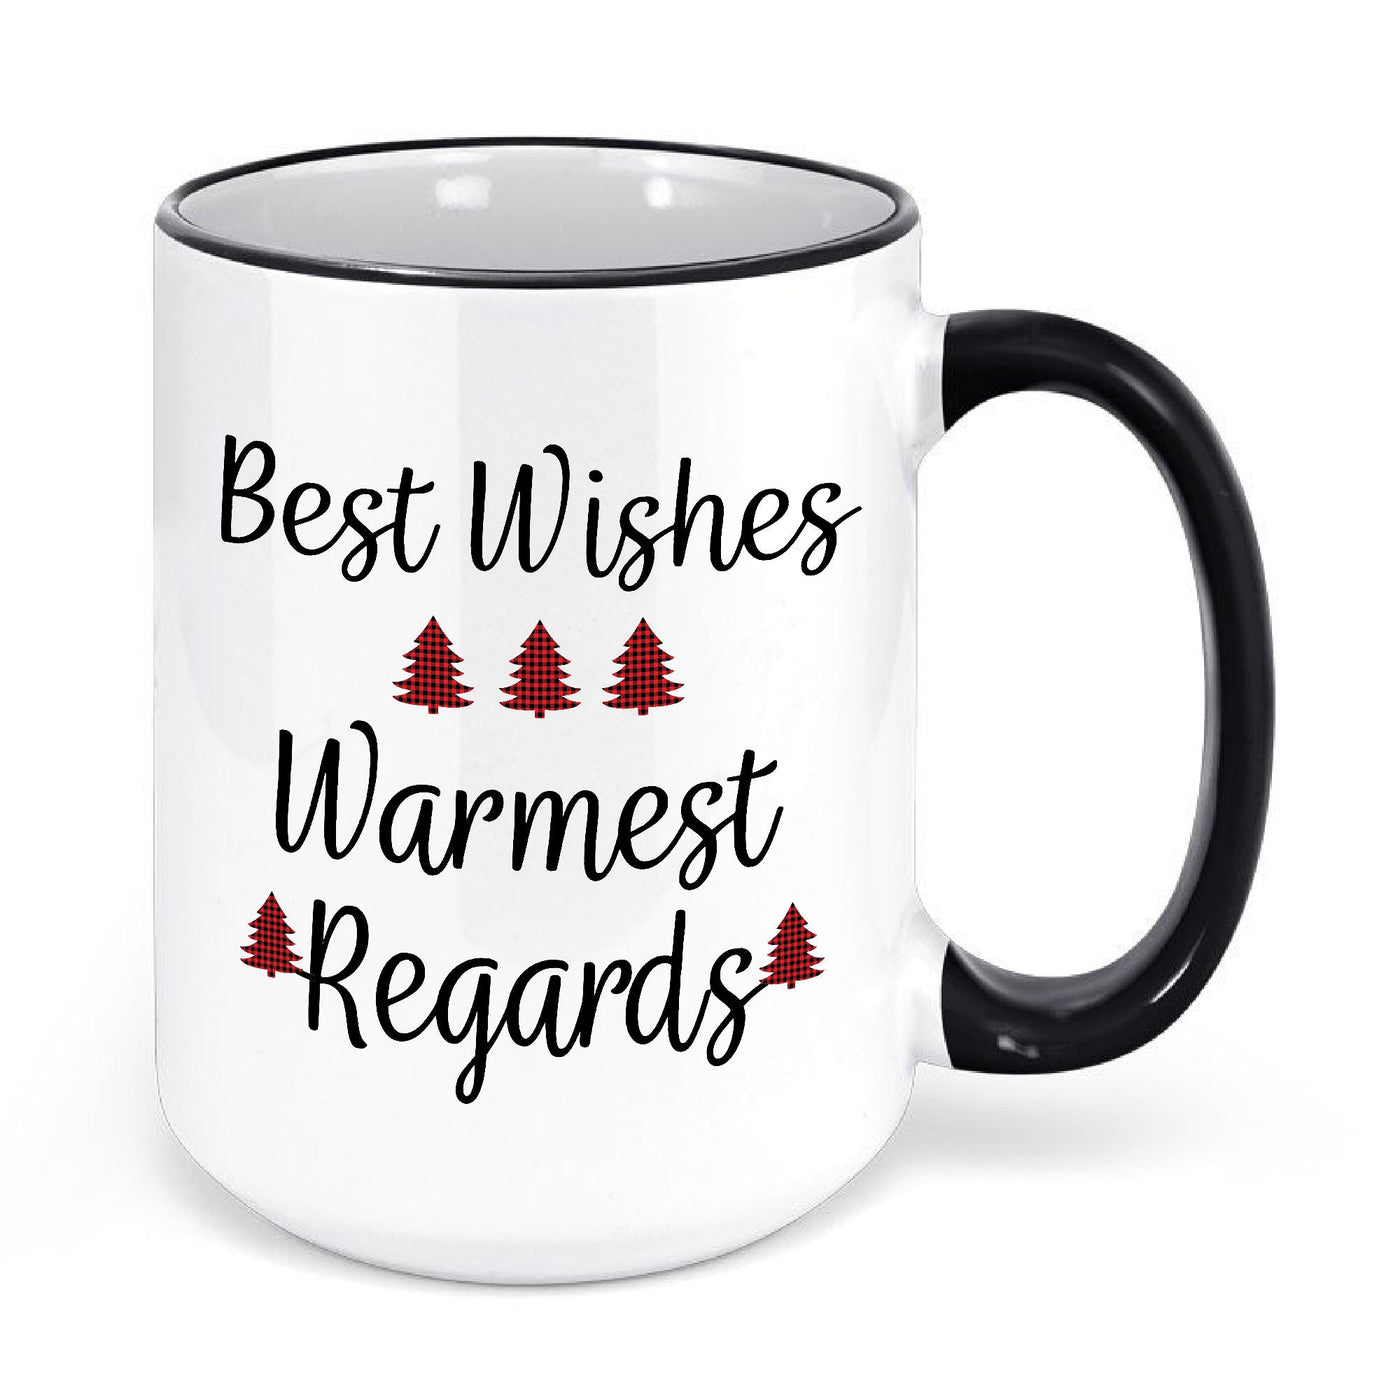 Best Wishes Warmest Regards Mug